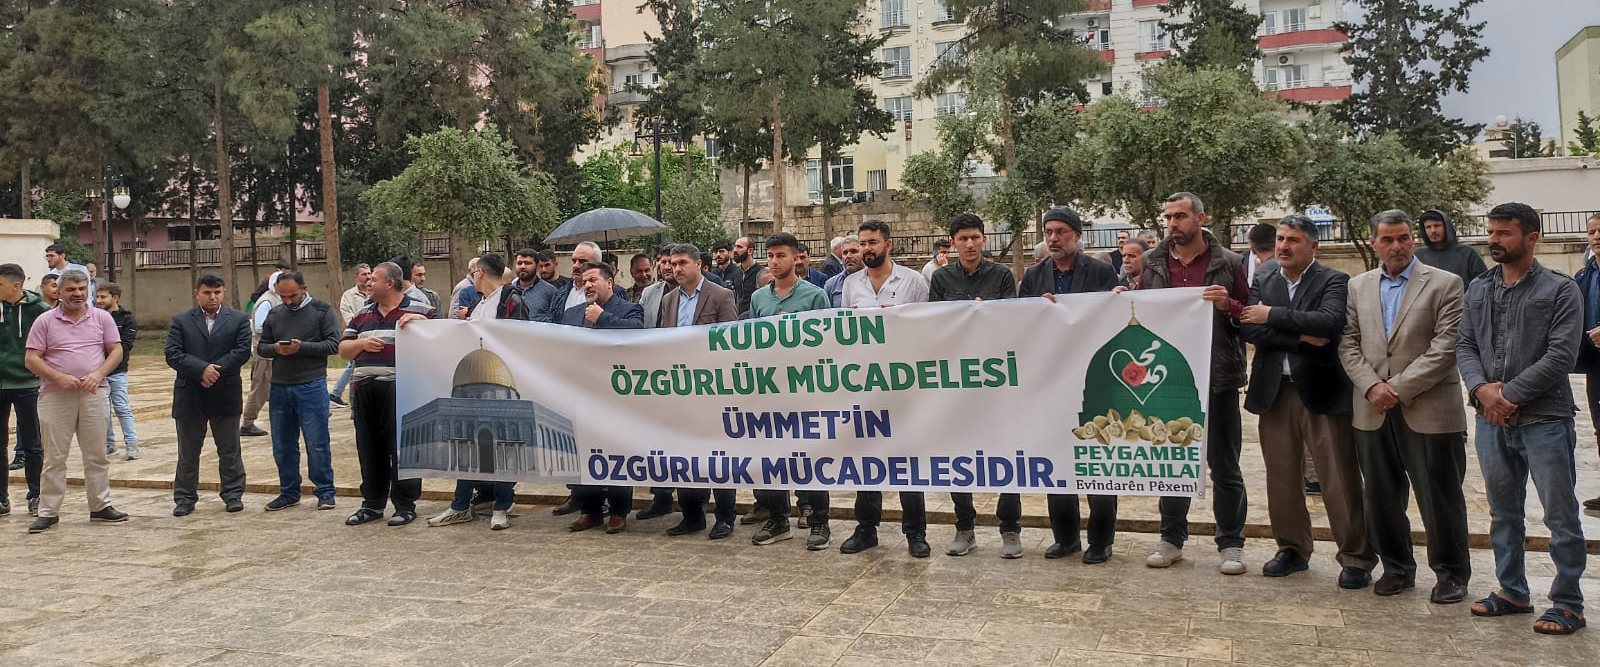 Mardin’in Kızıltepe ilçesinde 46